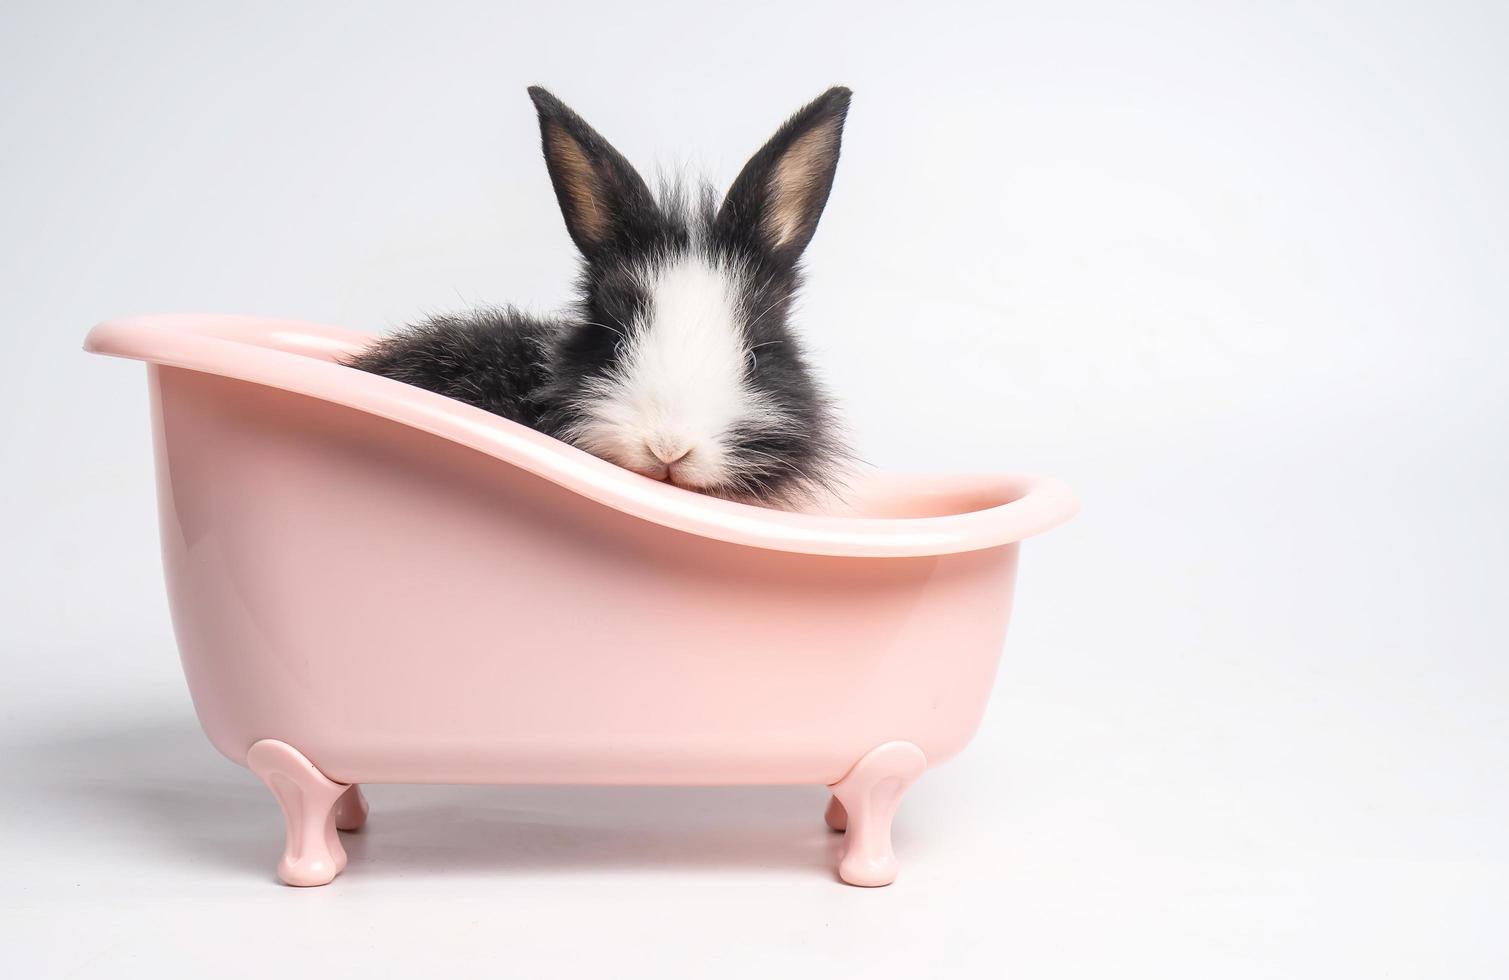 bébé lapin tacheté blanc et noir ou lapin animal petits lapins de pâques est assis dans une baignoire rose et un drôle d'animal heureux a un arrière-plan blanc isolé photo